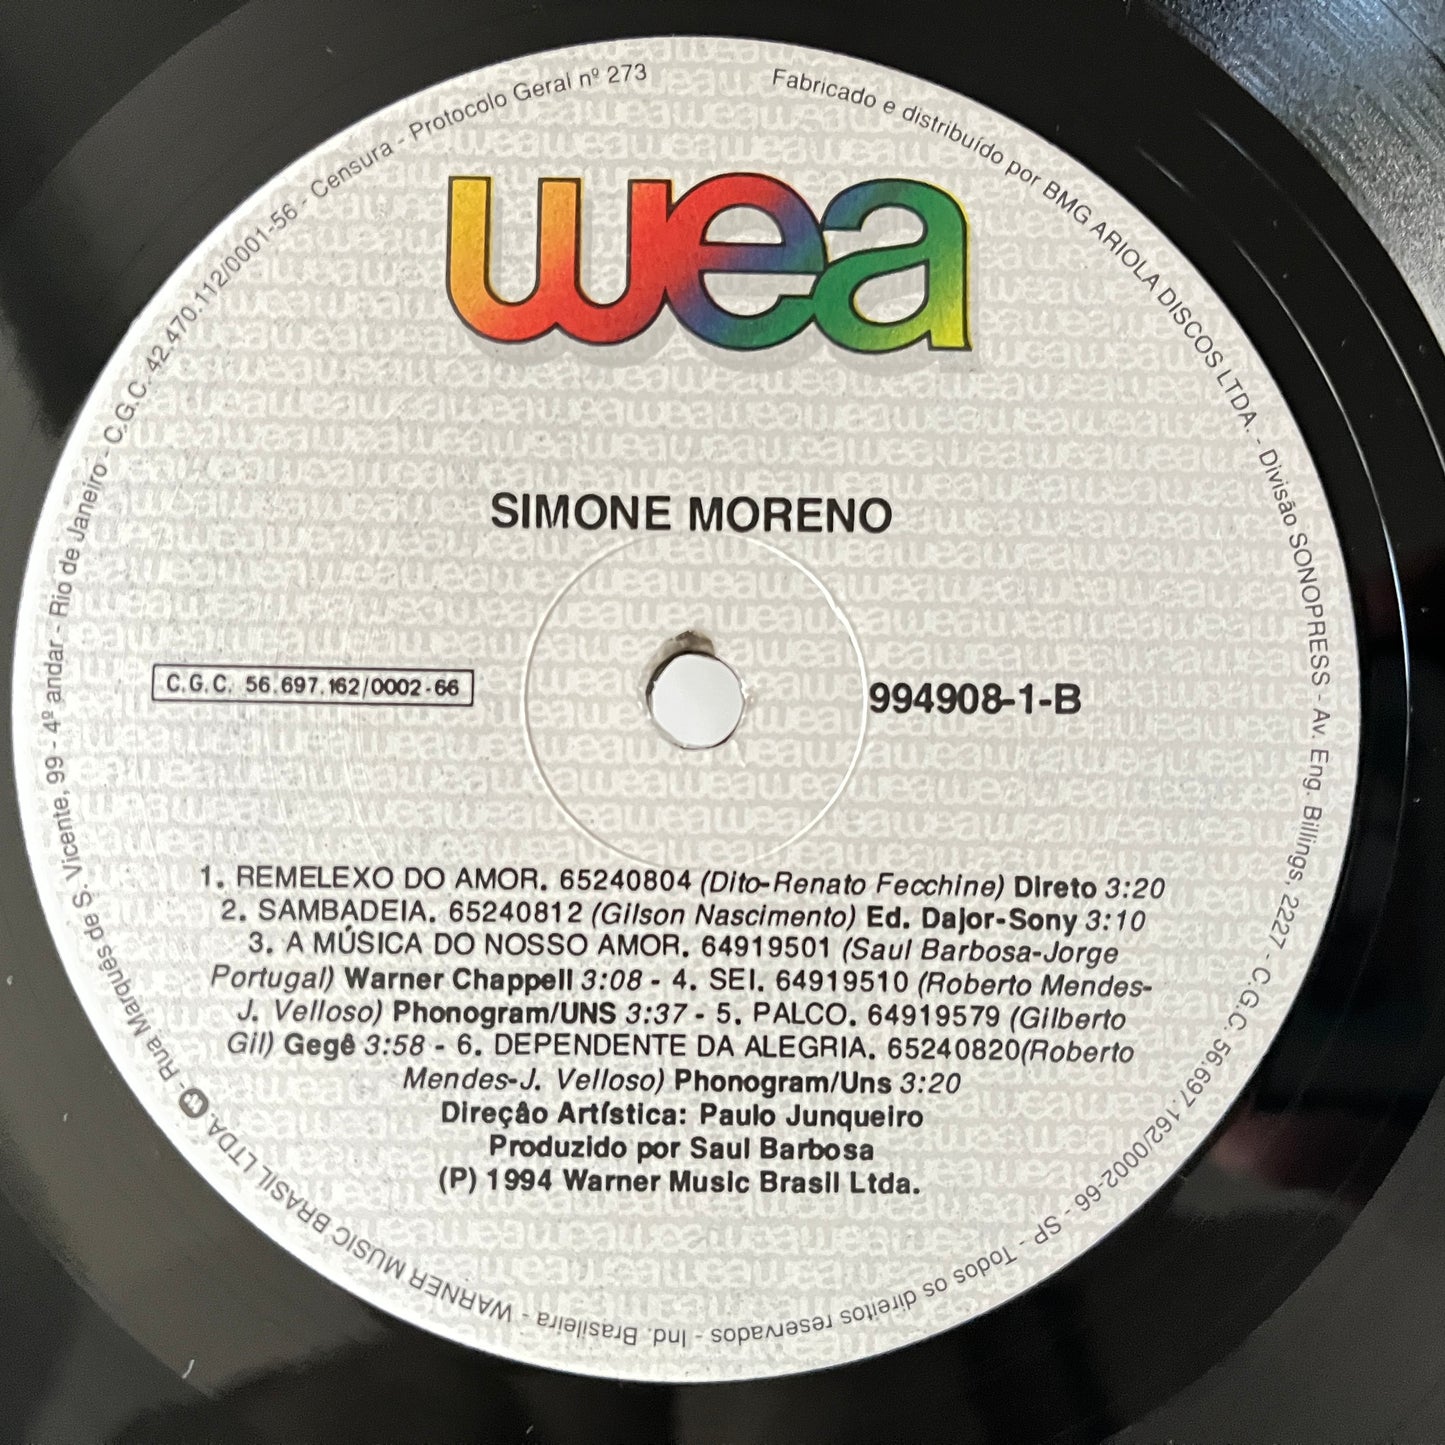 Simone Moreno – Simone Moreno